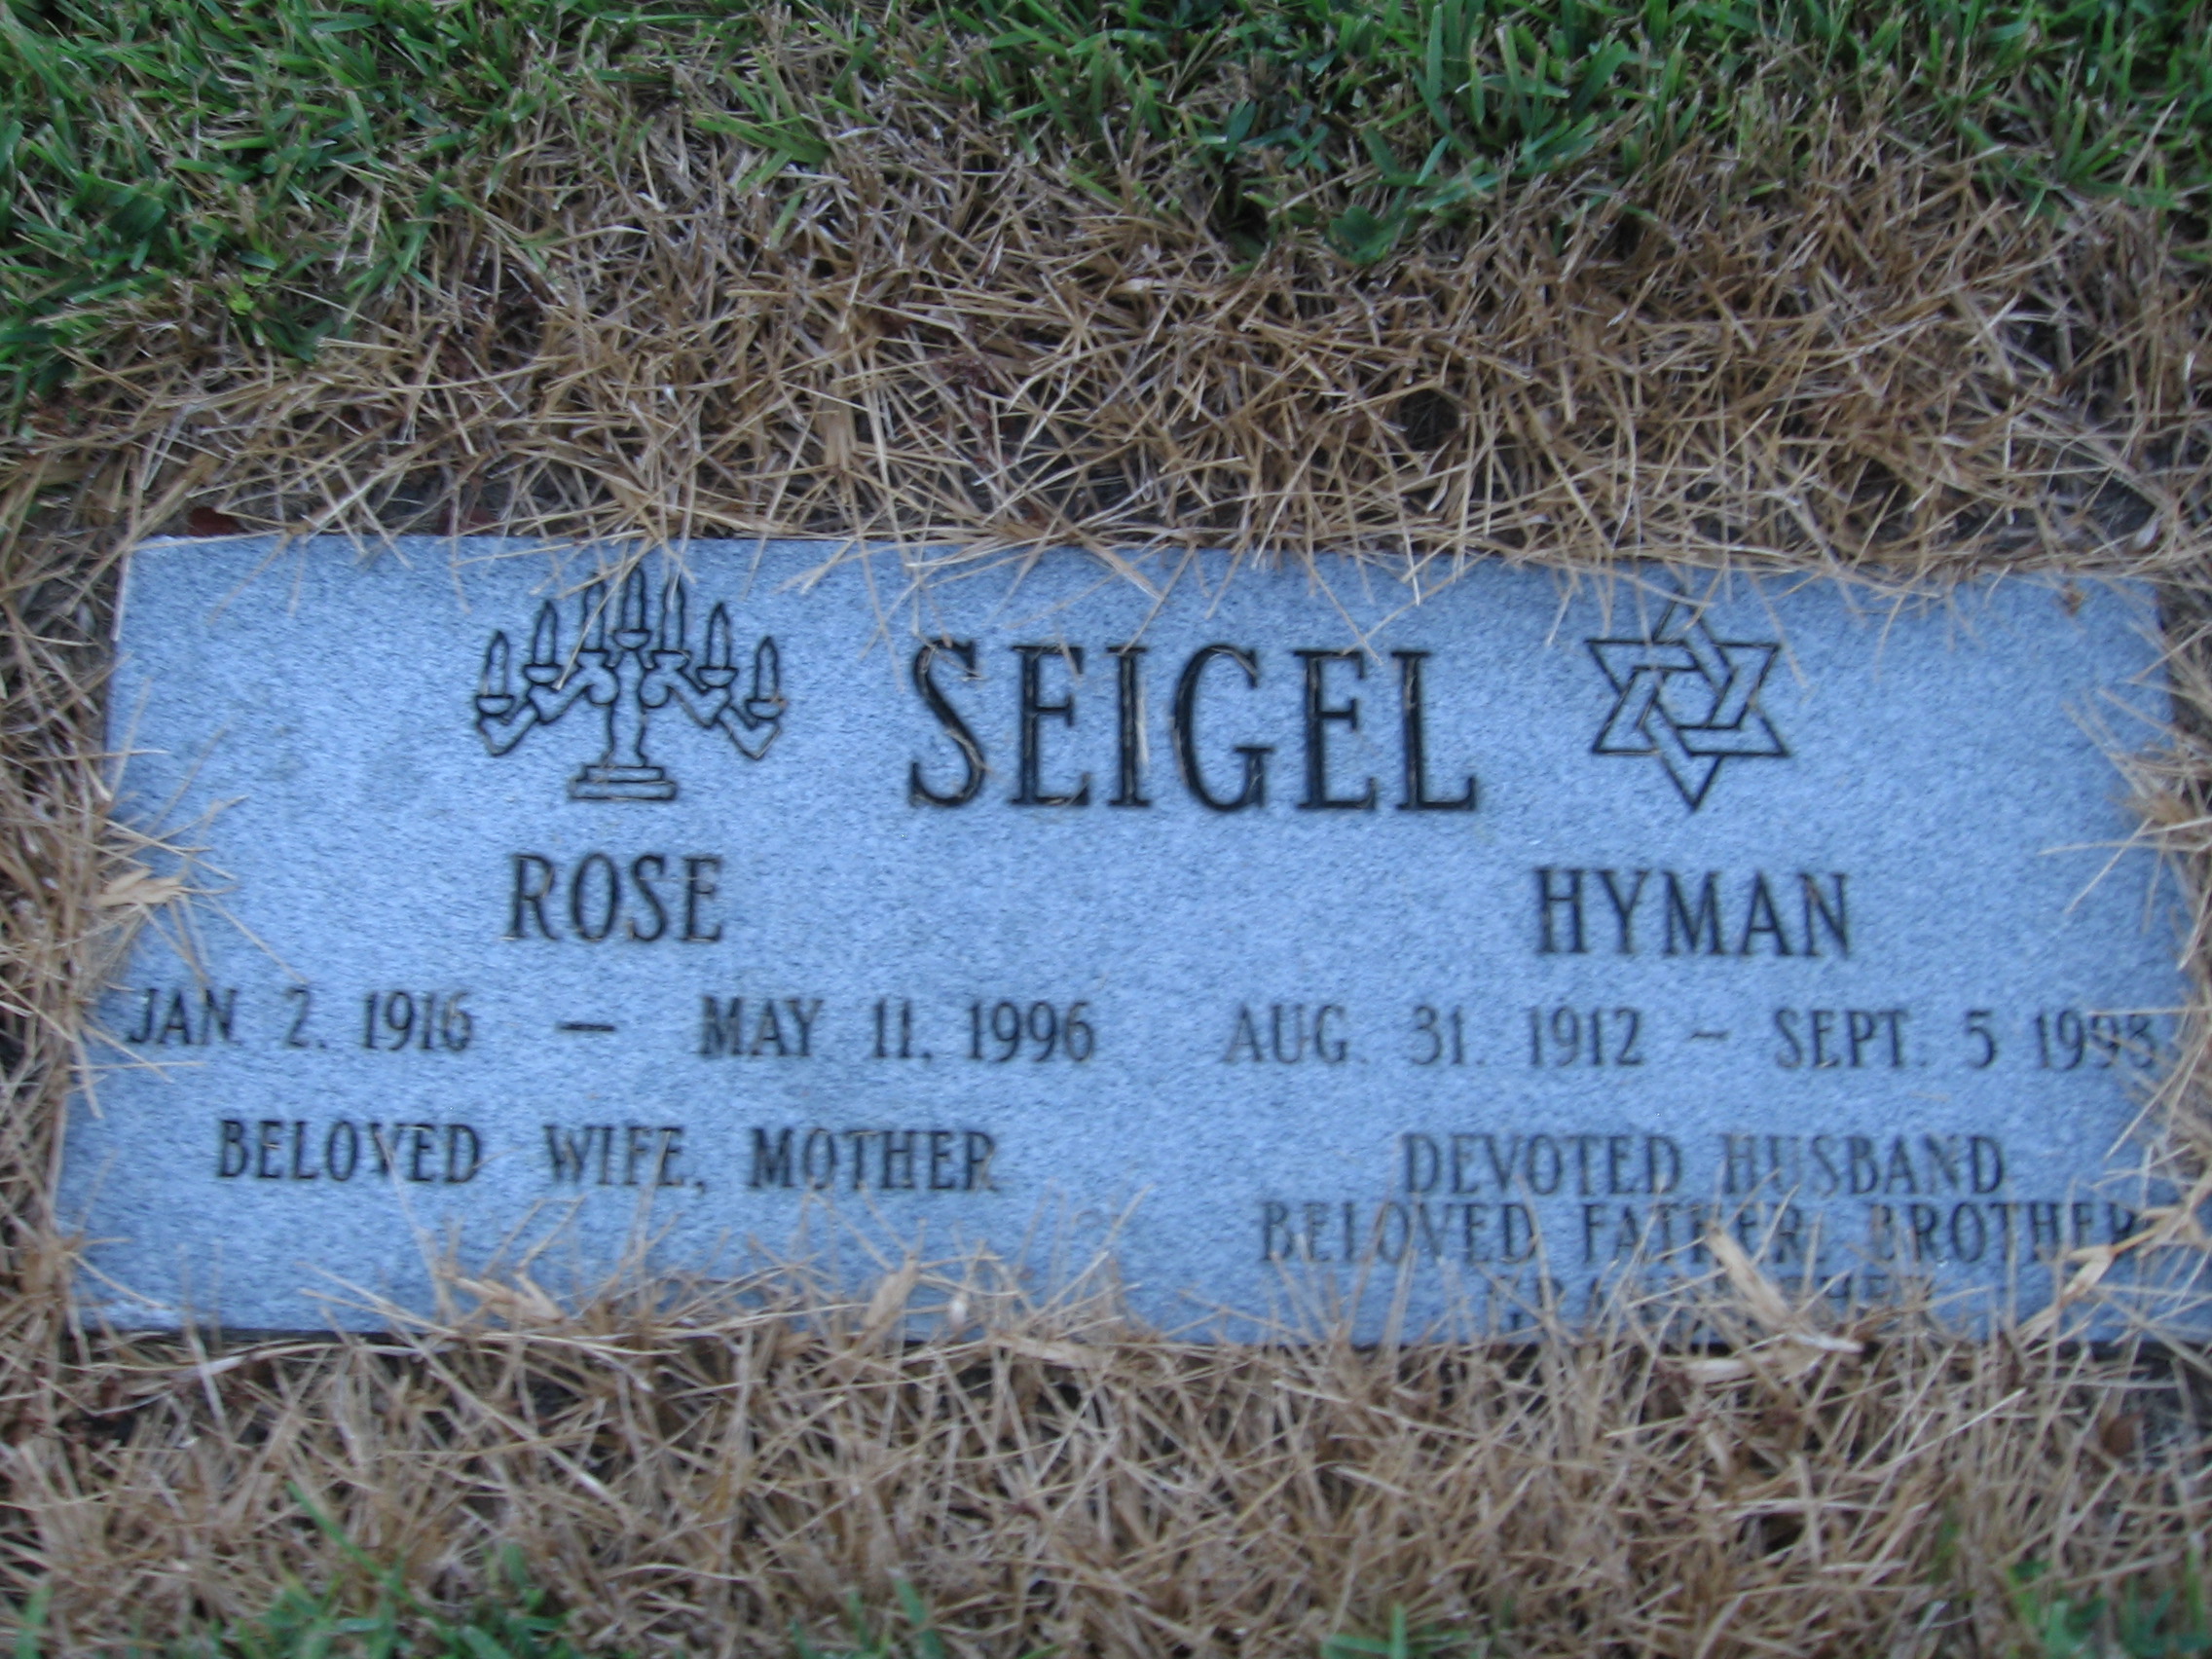 Rose Seigel